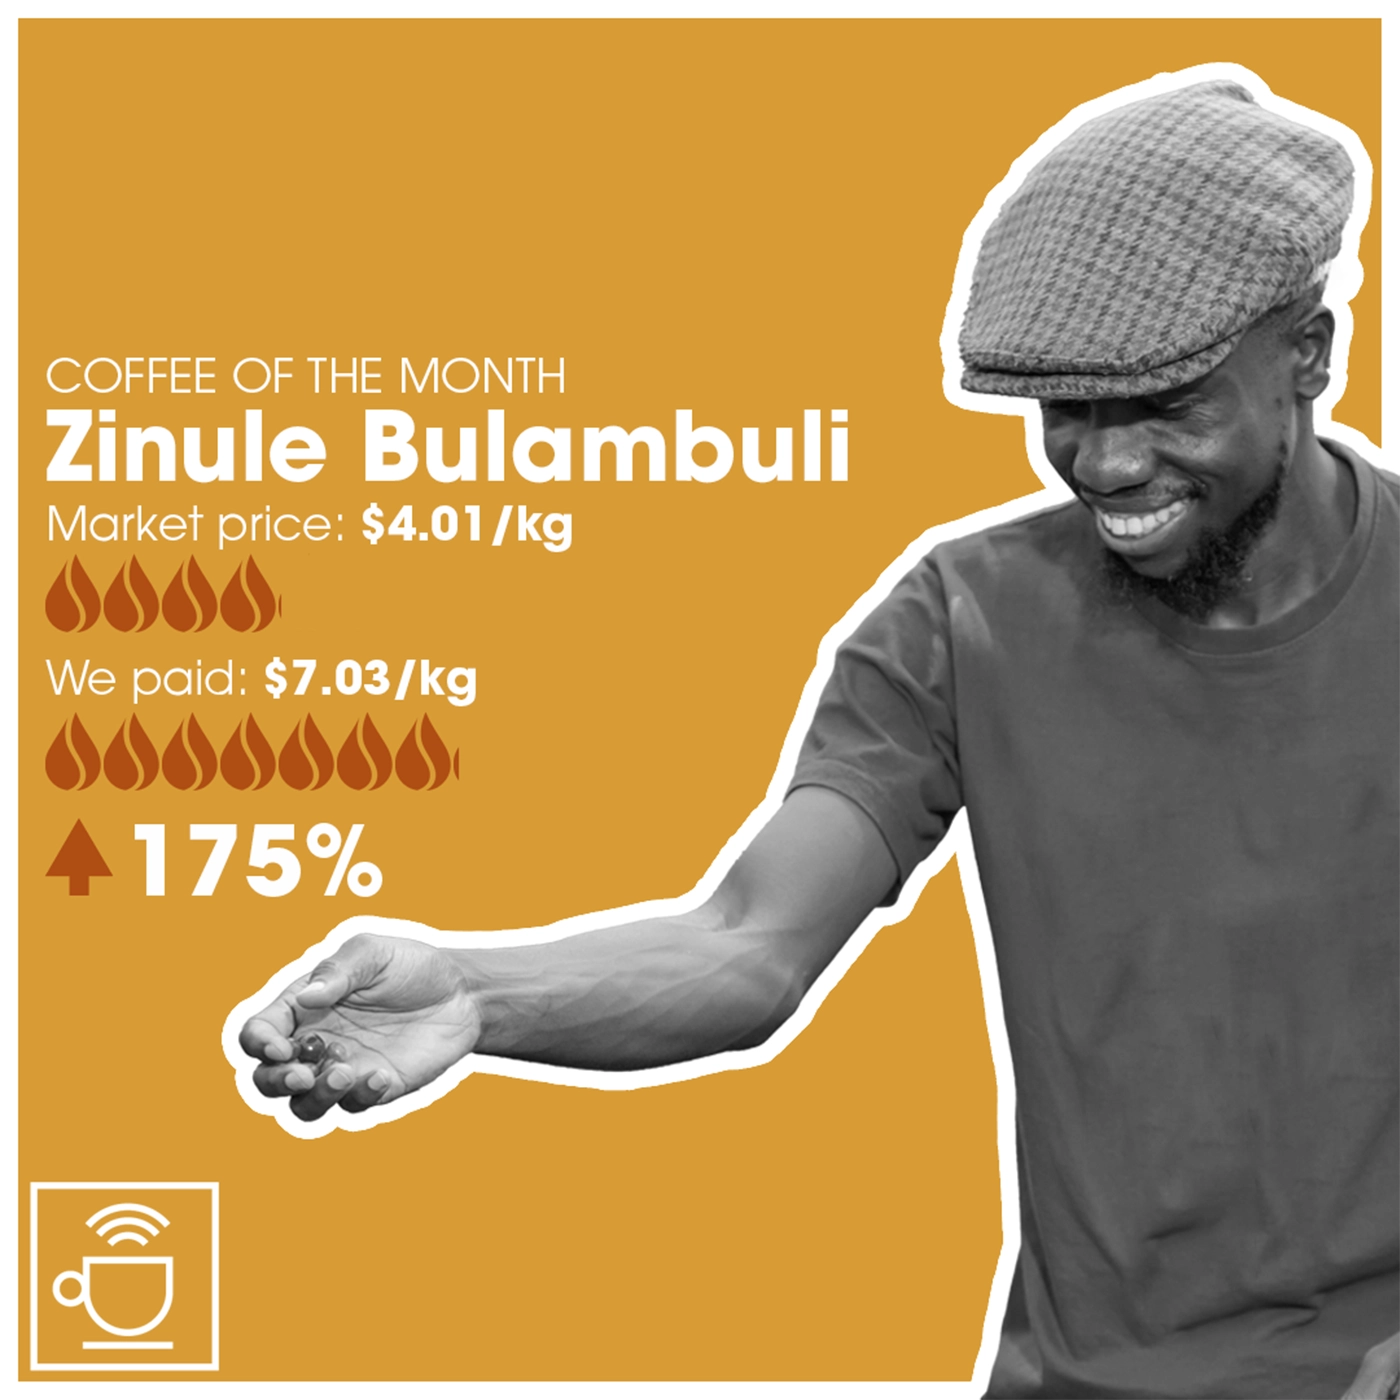 månedens kaffe, zinule bulambuli, markedspris $4,01/kg, CleverCoffee betalte $7,03/kg, 175% over markedspris 